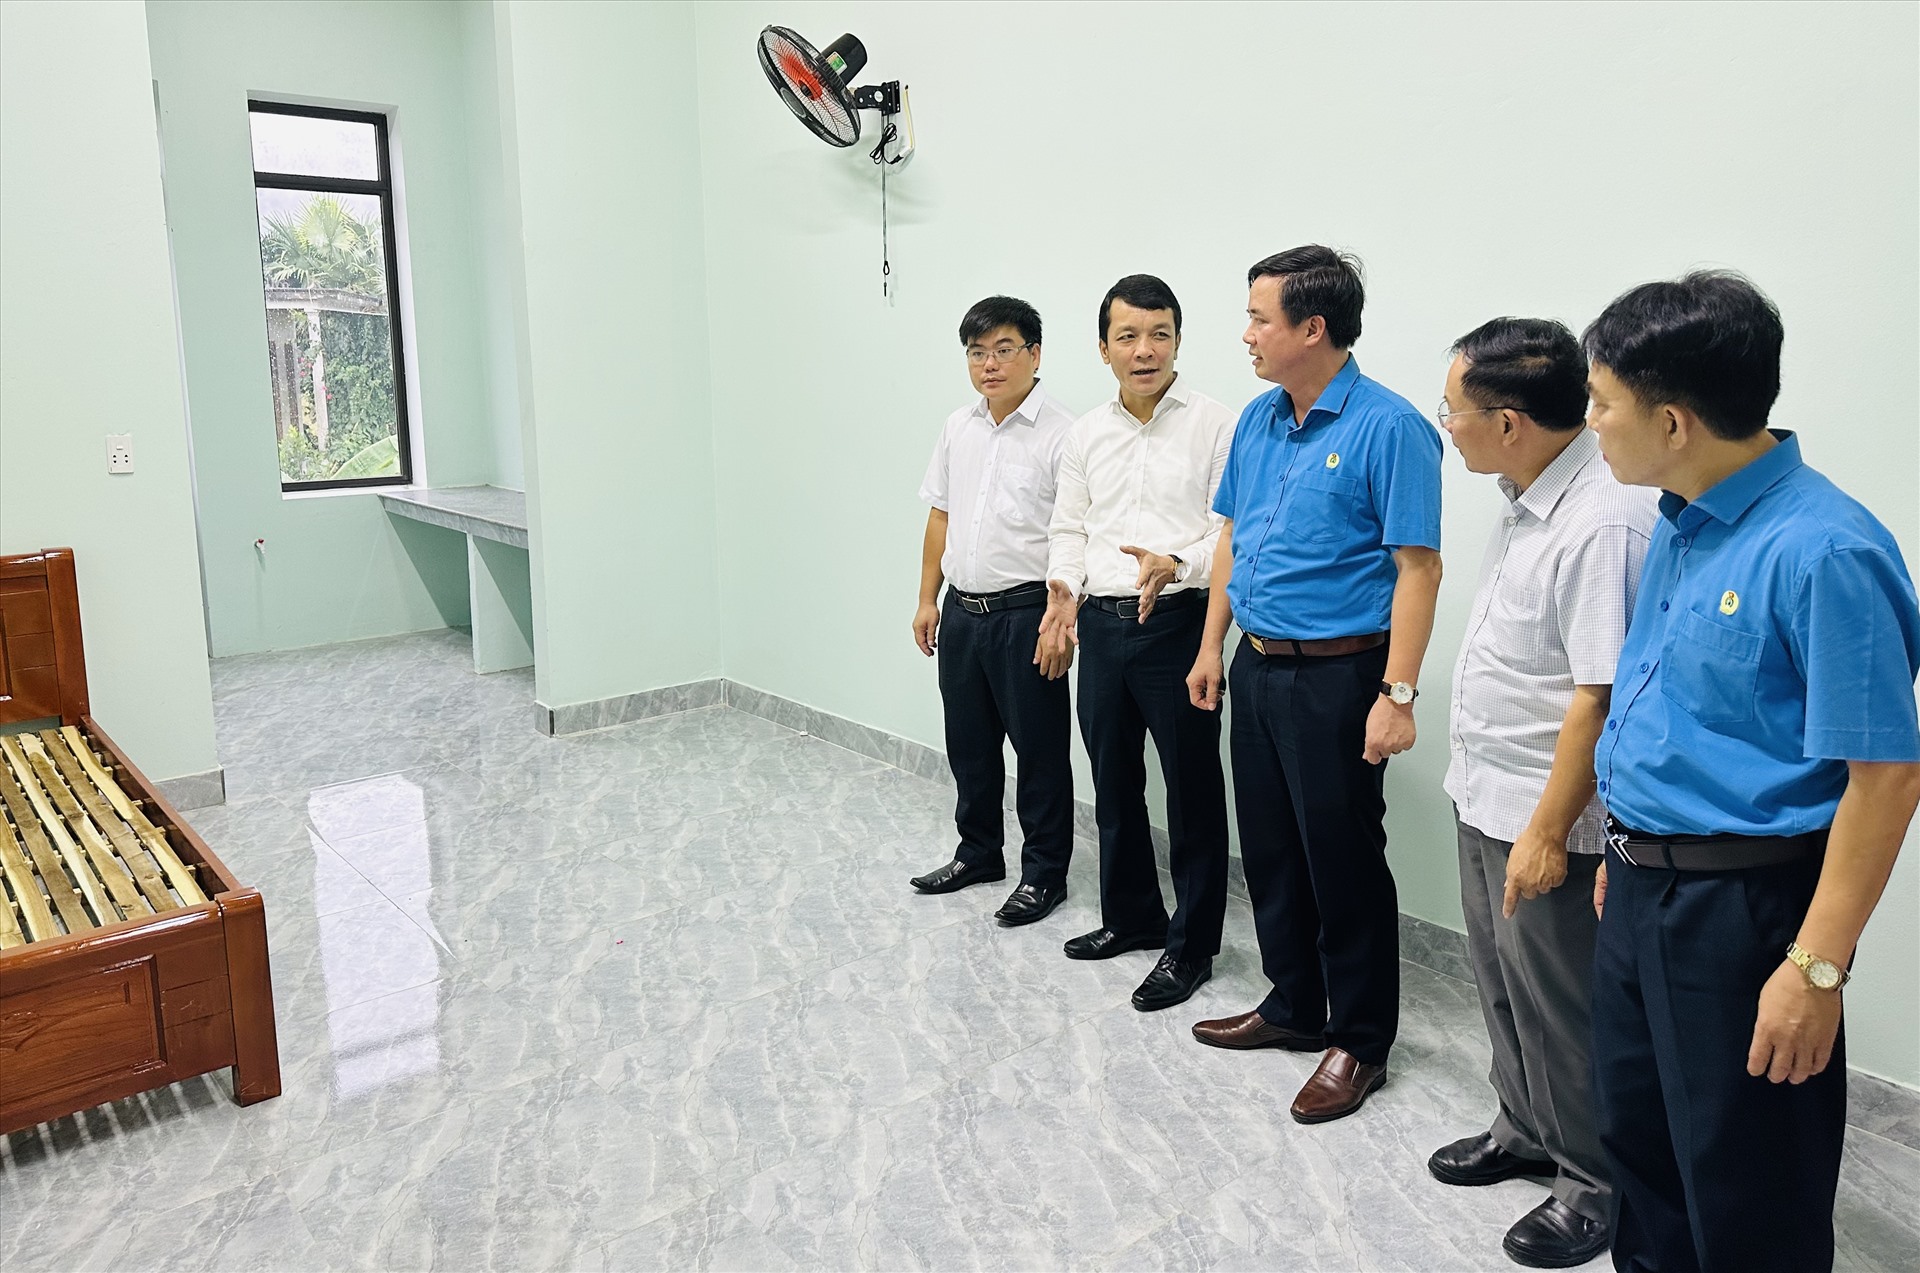 Lãnh đạo LĐLĐ Quảng Bình cùng lãnh đạo huyện Tuyên Hoá kiểm tra thực tế công trình sau khi bàn giao. Ảnh: Lê Phi Long